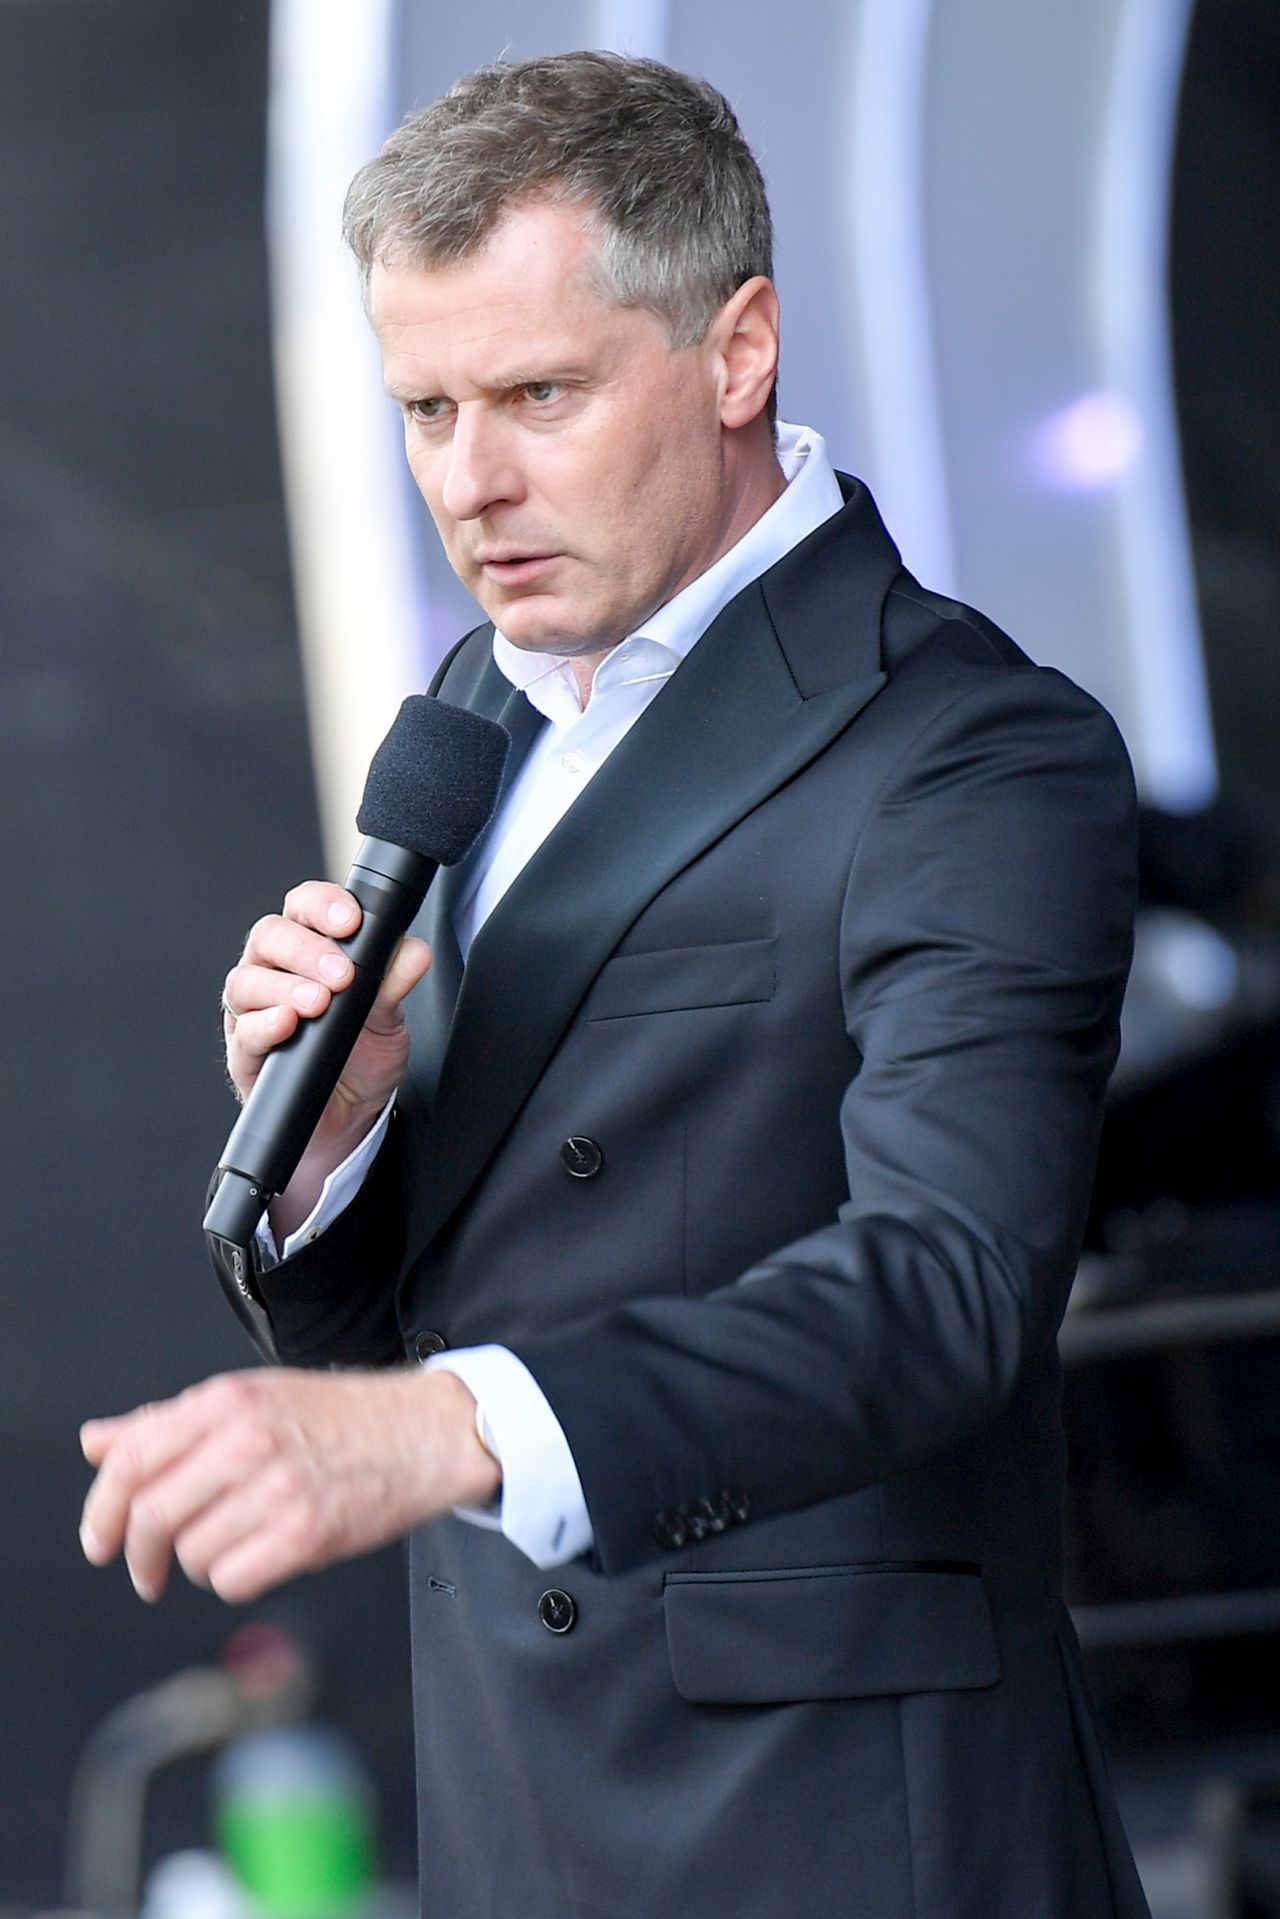 Krzysztof Respondek